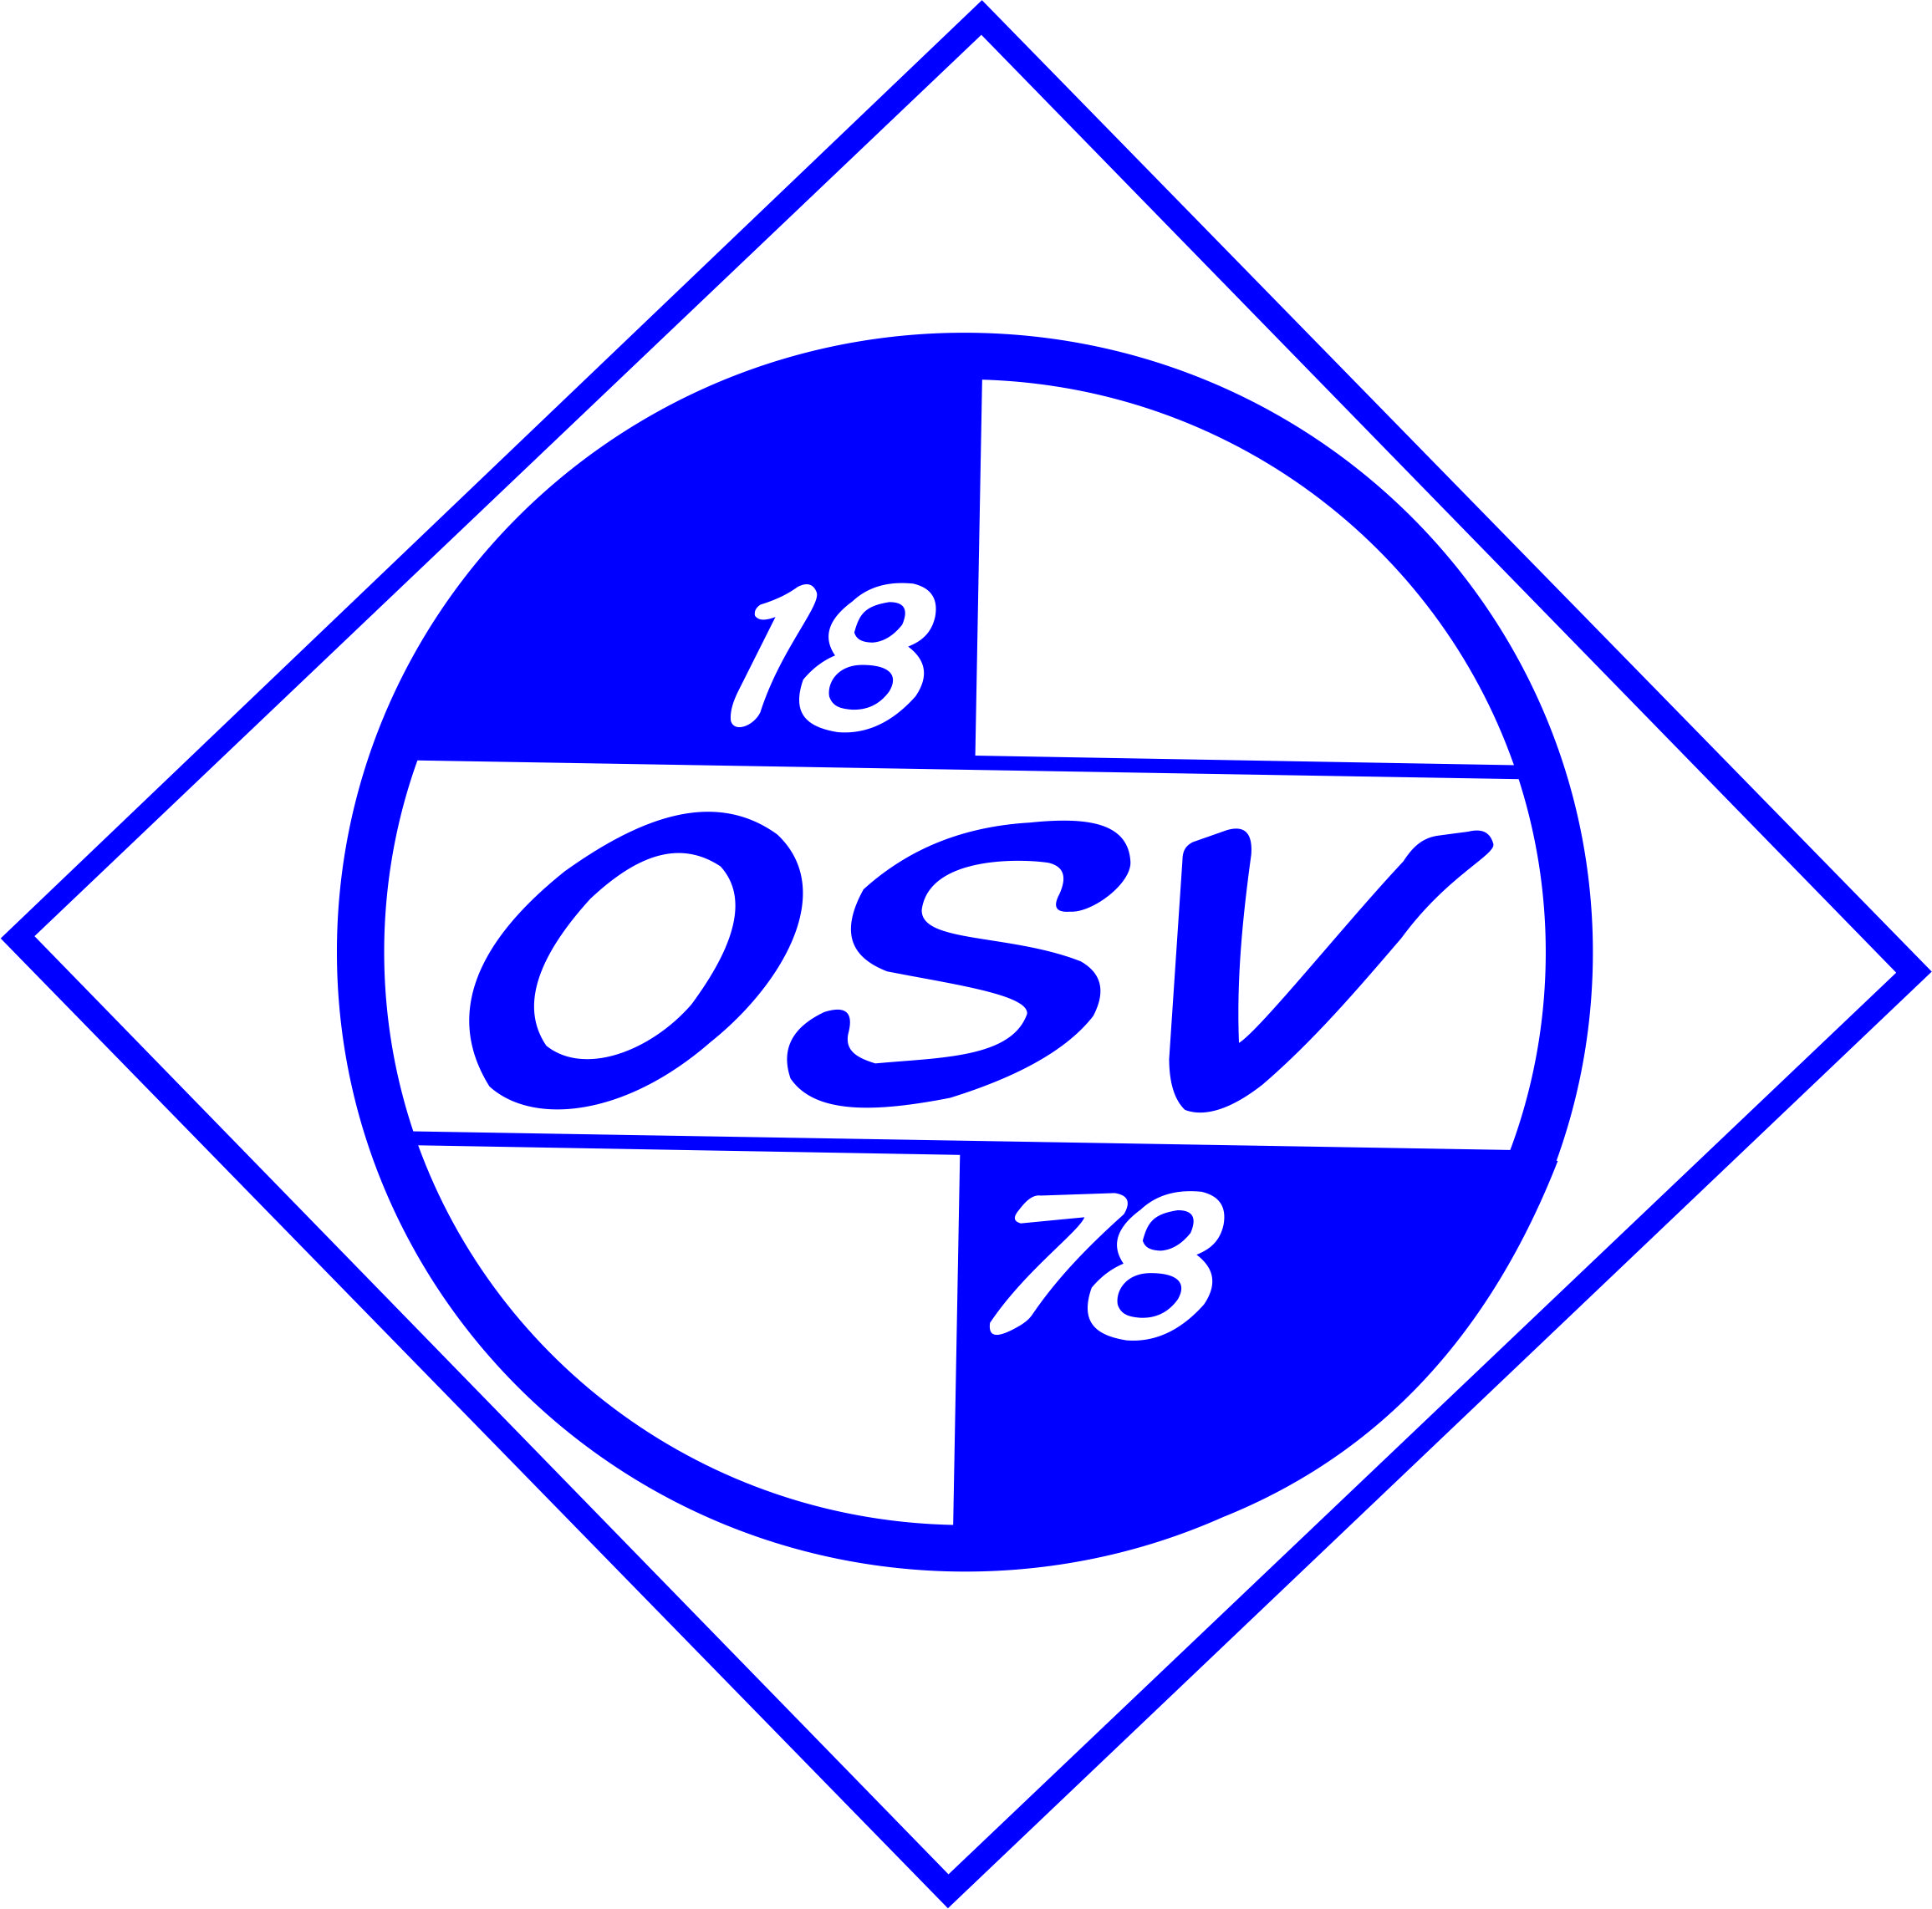 Osterather Sportverein 18/78 Meerbusch Logo